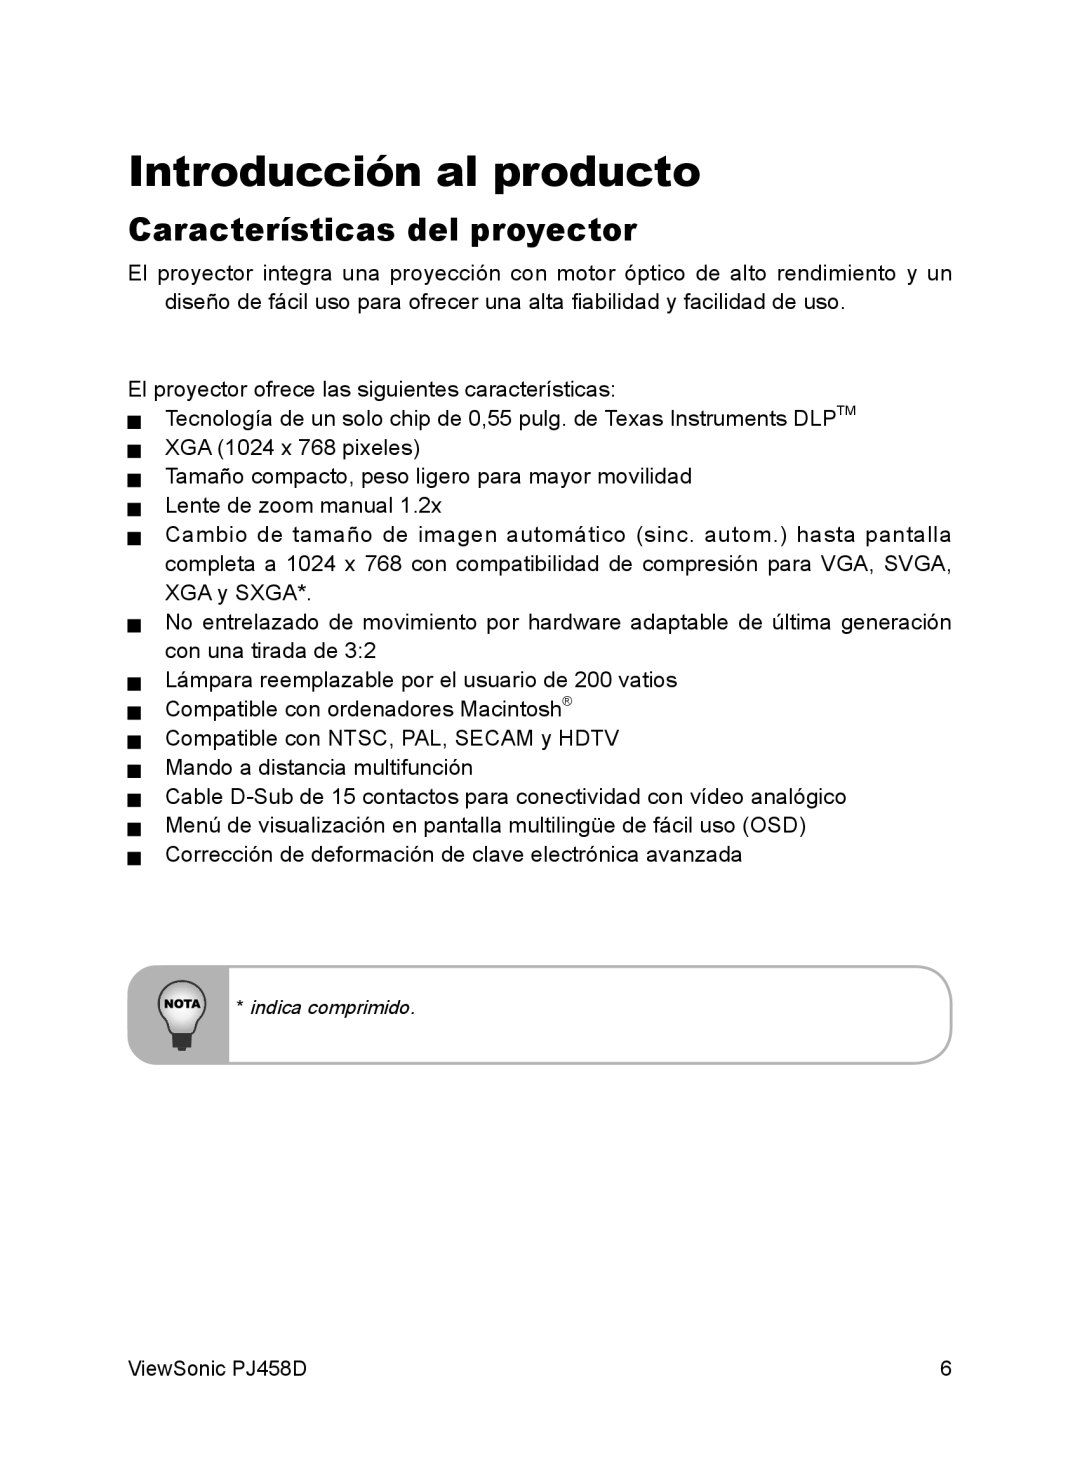 ViewSonic VS10872 manual Introducción al producto, Características del proyector 